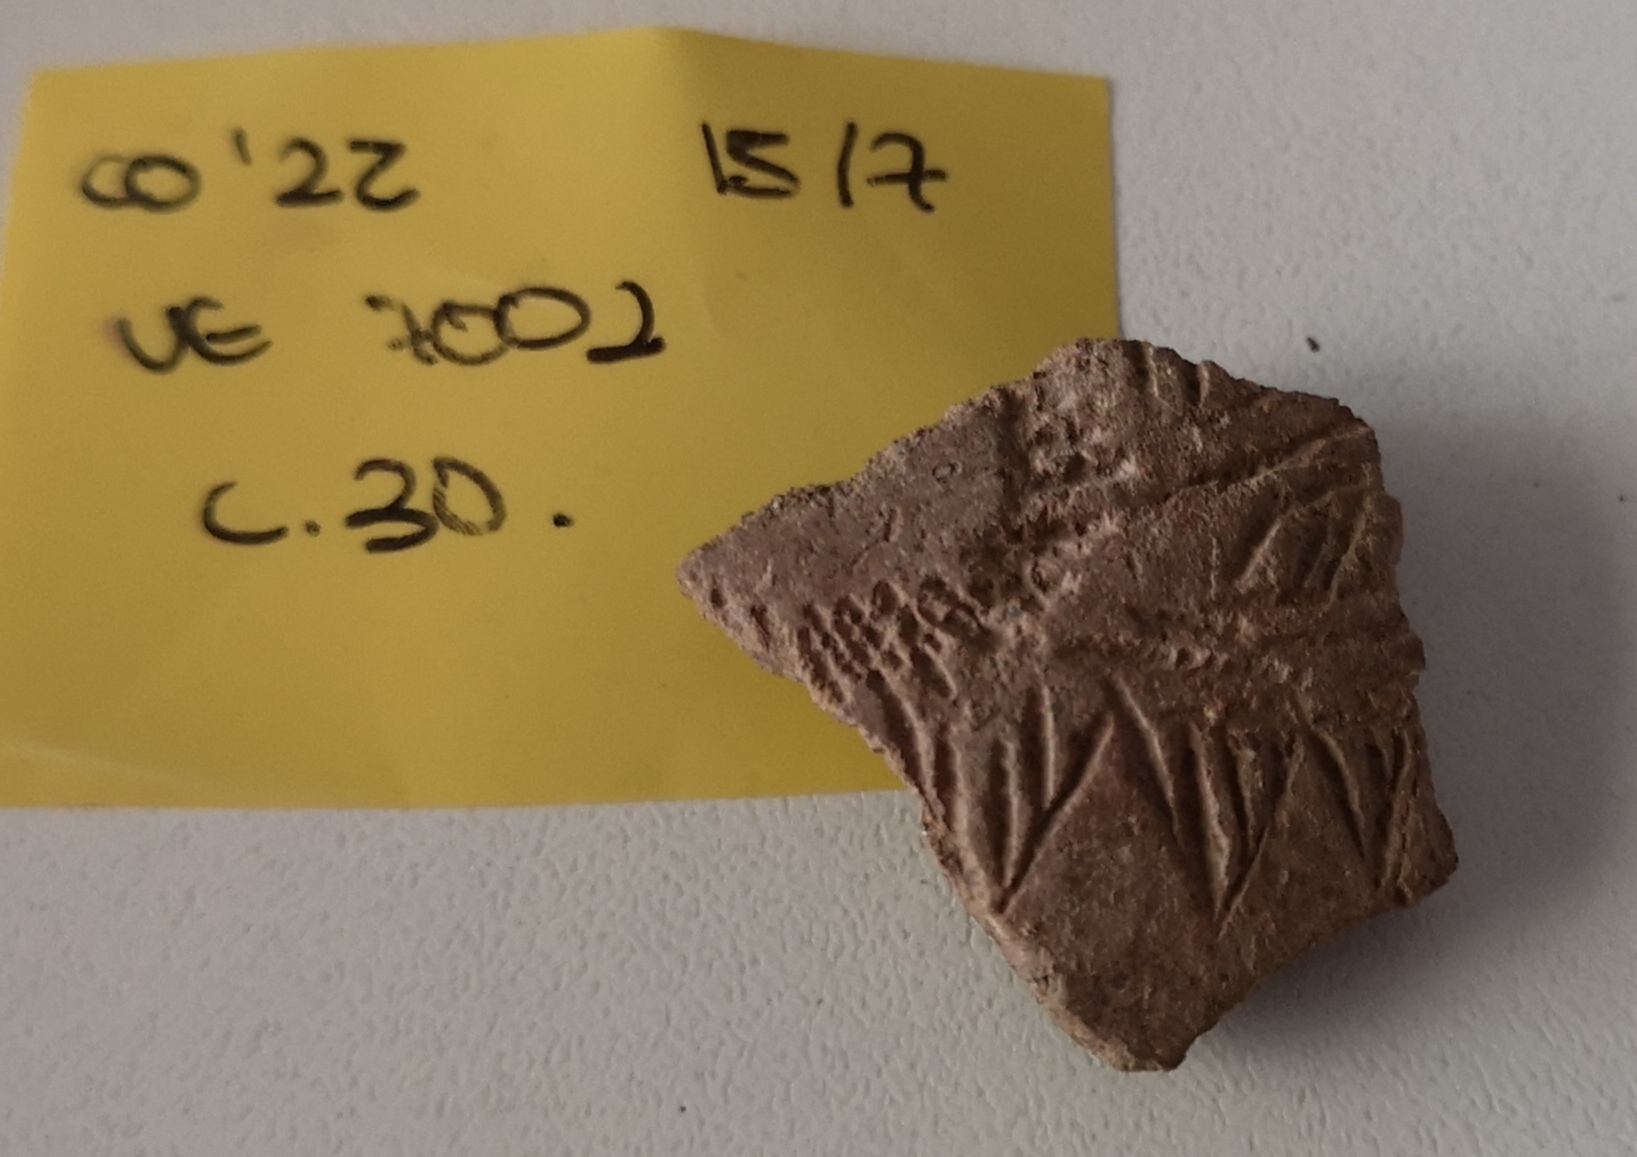 MARQ - Arqueólogos del MARQ hallan relevantes cerámicas del Neolítico en una grieta la Cova l'Or Beniarrés